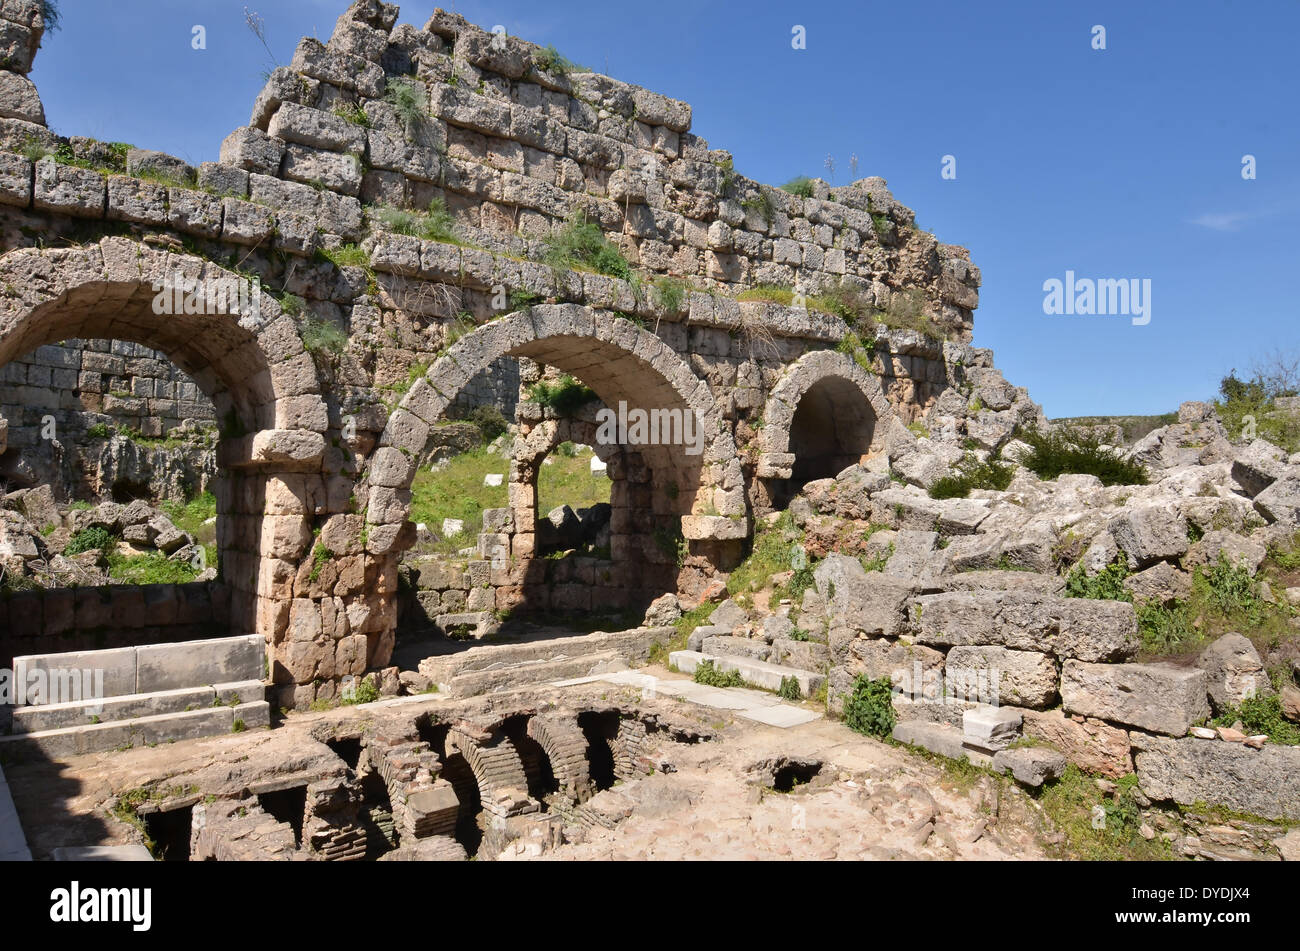 L'architecture grecque Grèce Europe Grèce antique en pierre de l'Europe la Turquie méditerranéenne classique perge ruines demeure, temple Banque D'Images